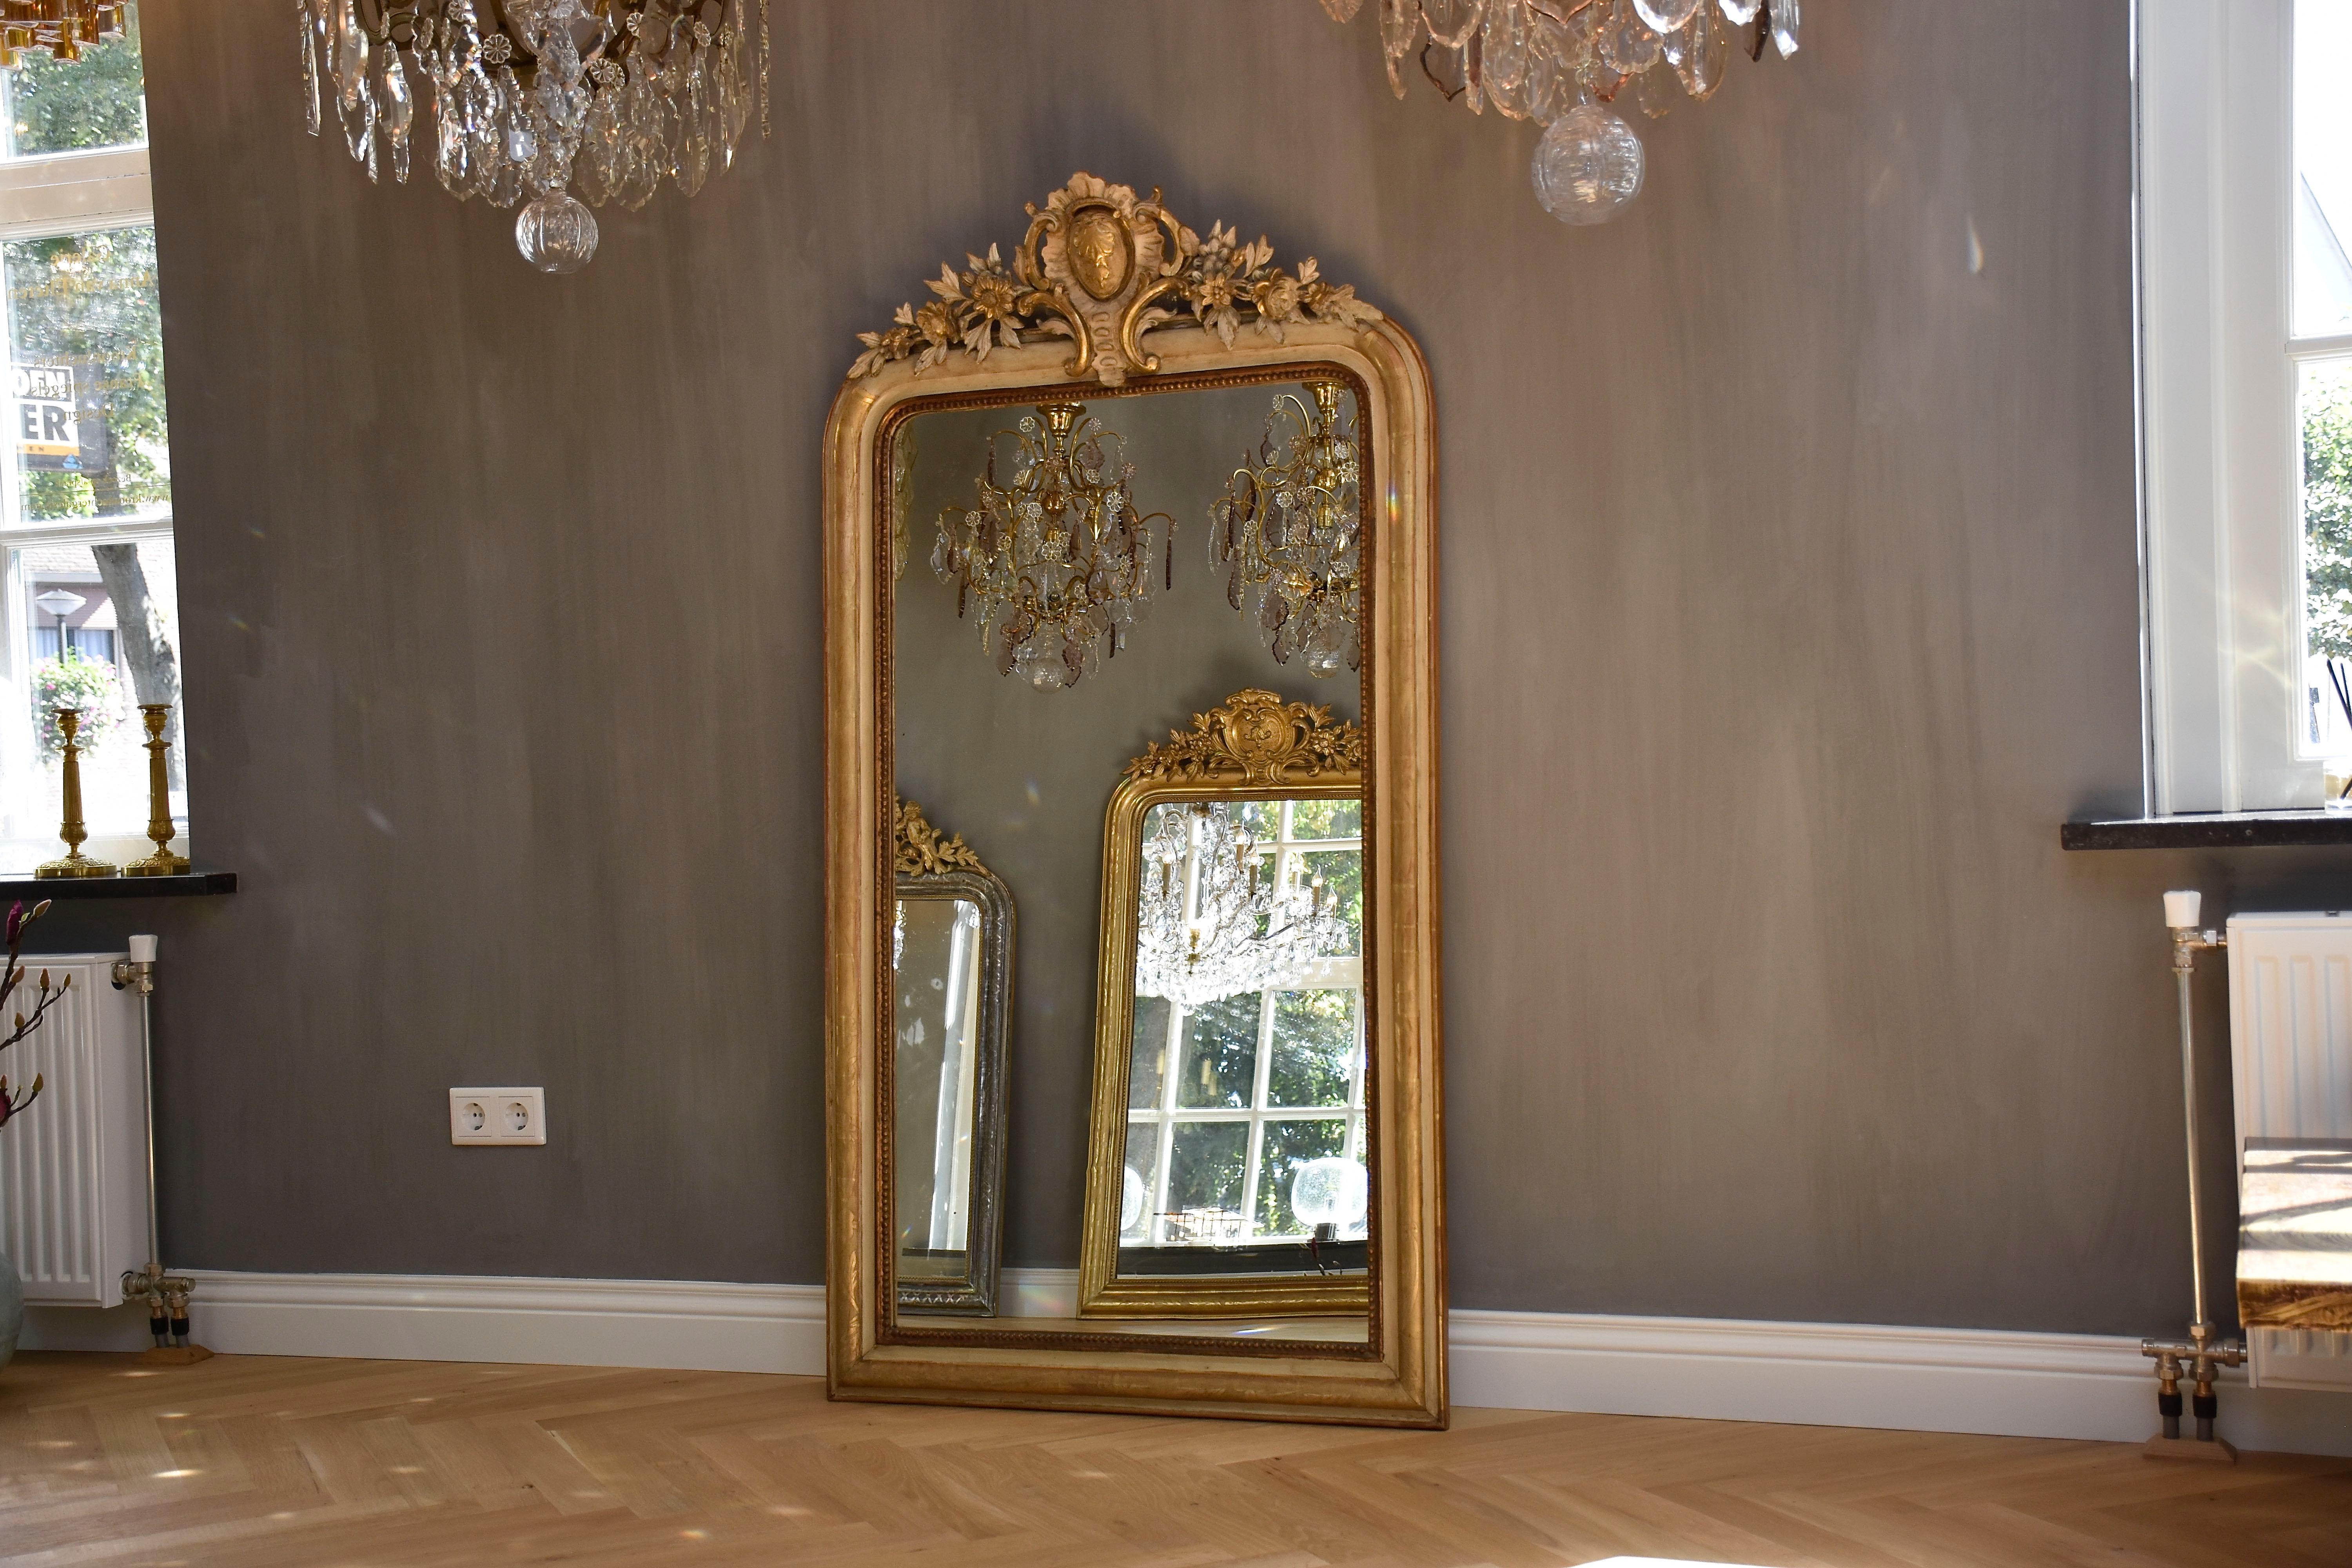 Un joli miroir français du 19ème siècle avec son verre antique d'origine et une belle couronne !
Le cimier représente un schell avec des motifs feuillus et floraux et des rinceaux.
Le cadre a une couleur crème originale et une dorure à la feuille